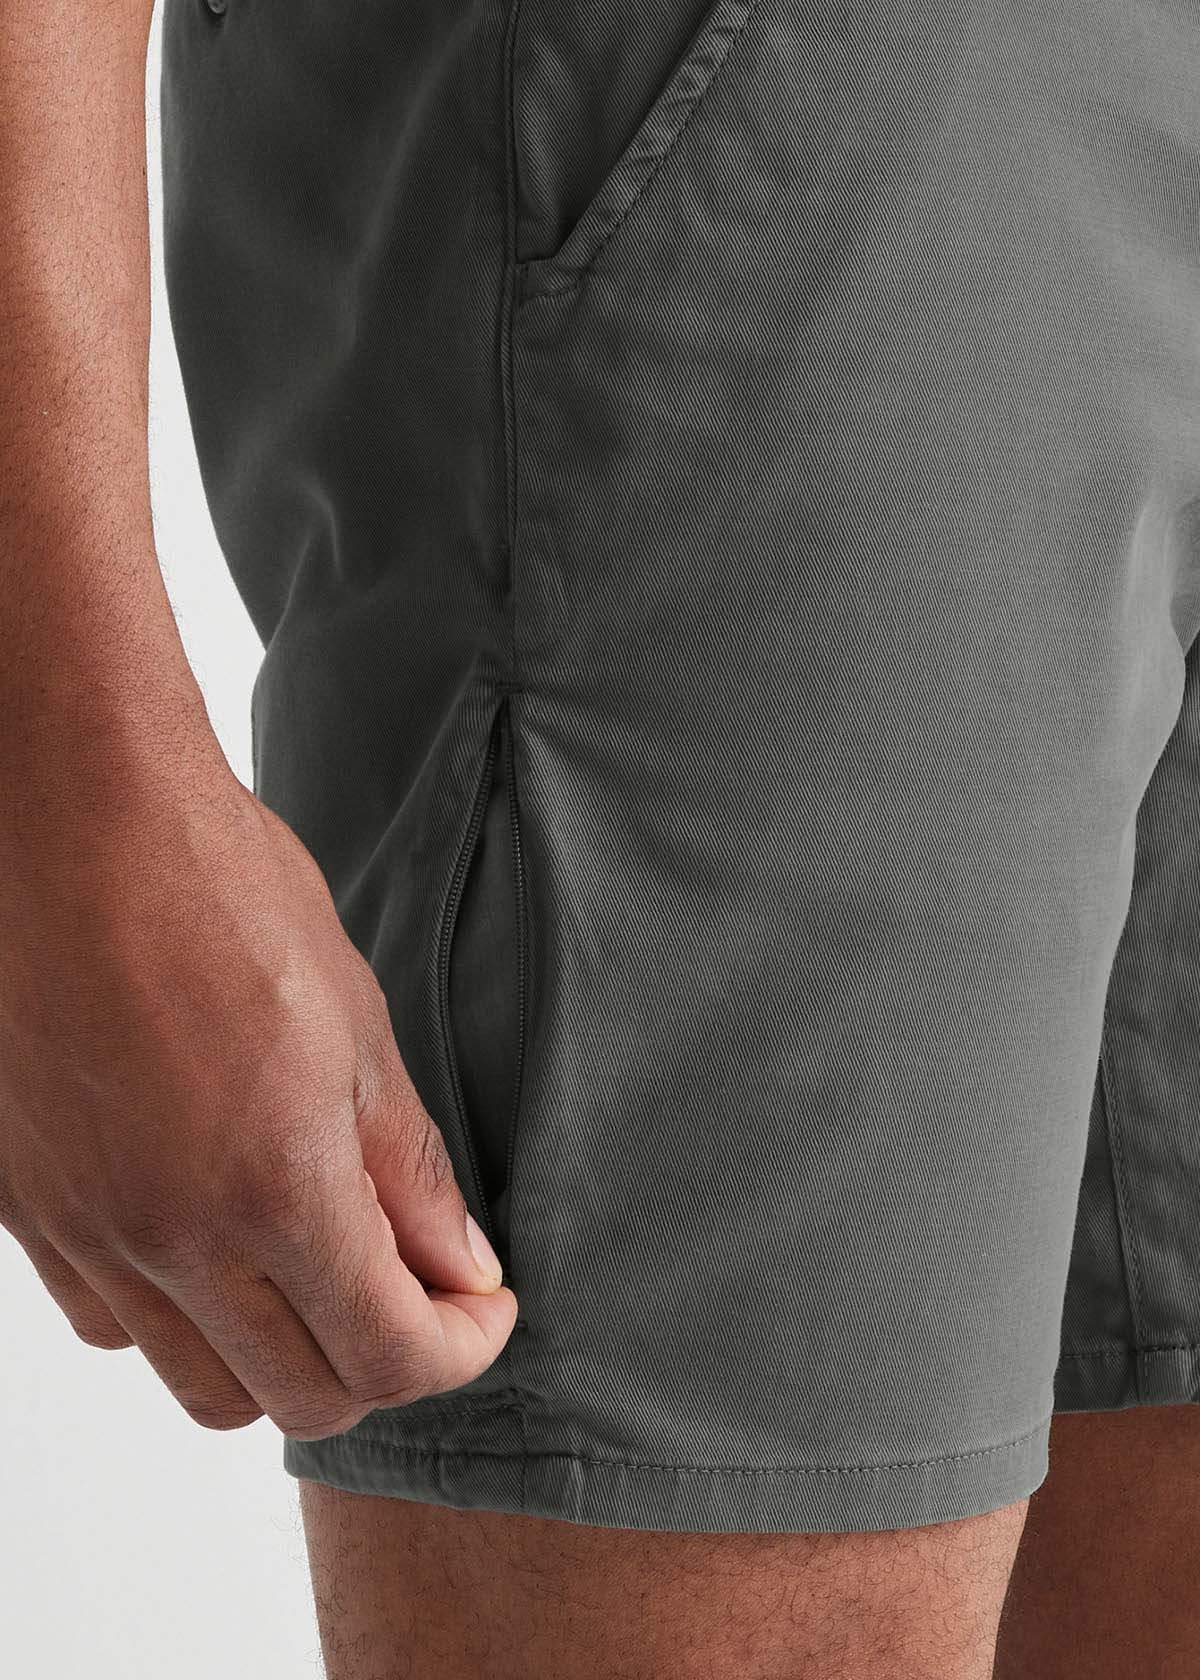 mens lightweight light green-grey shorts thigh zip pocket